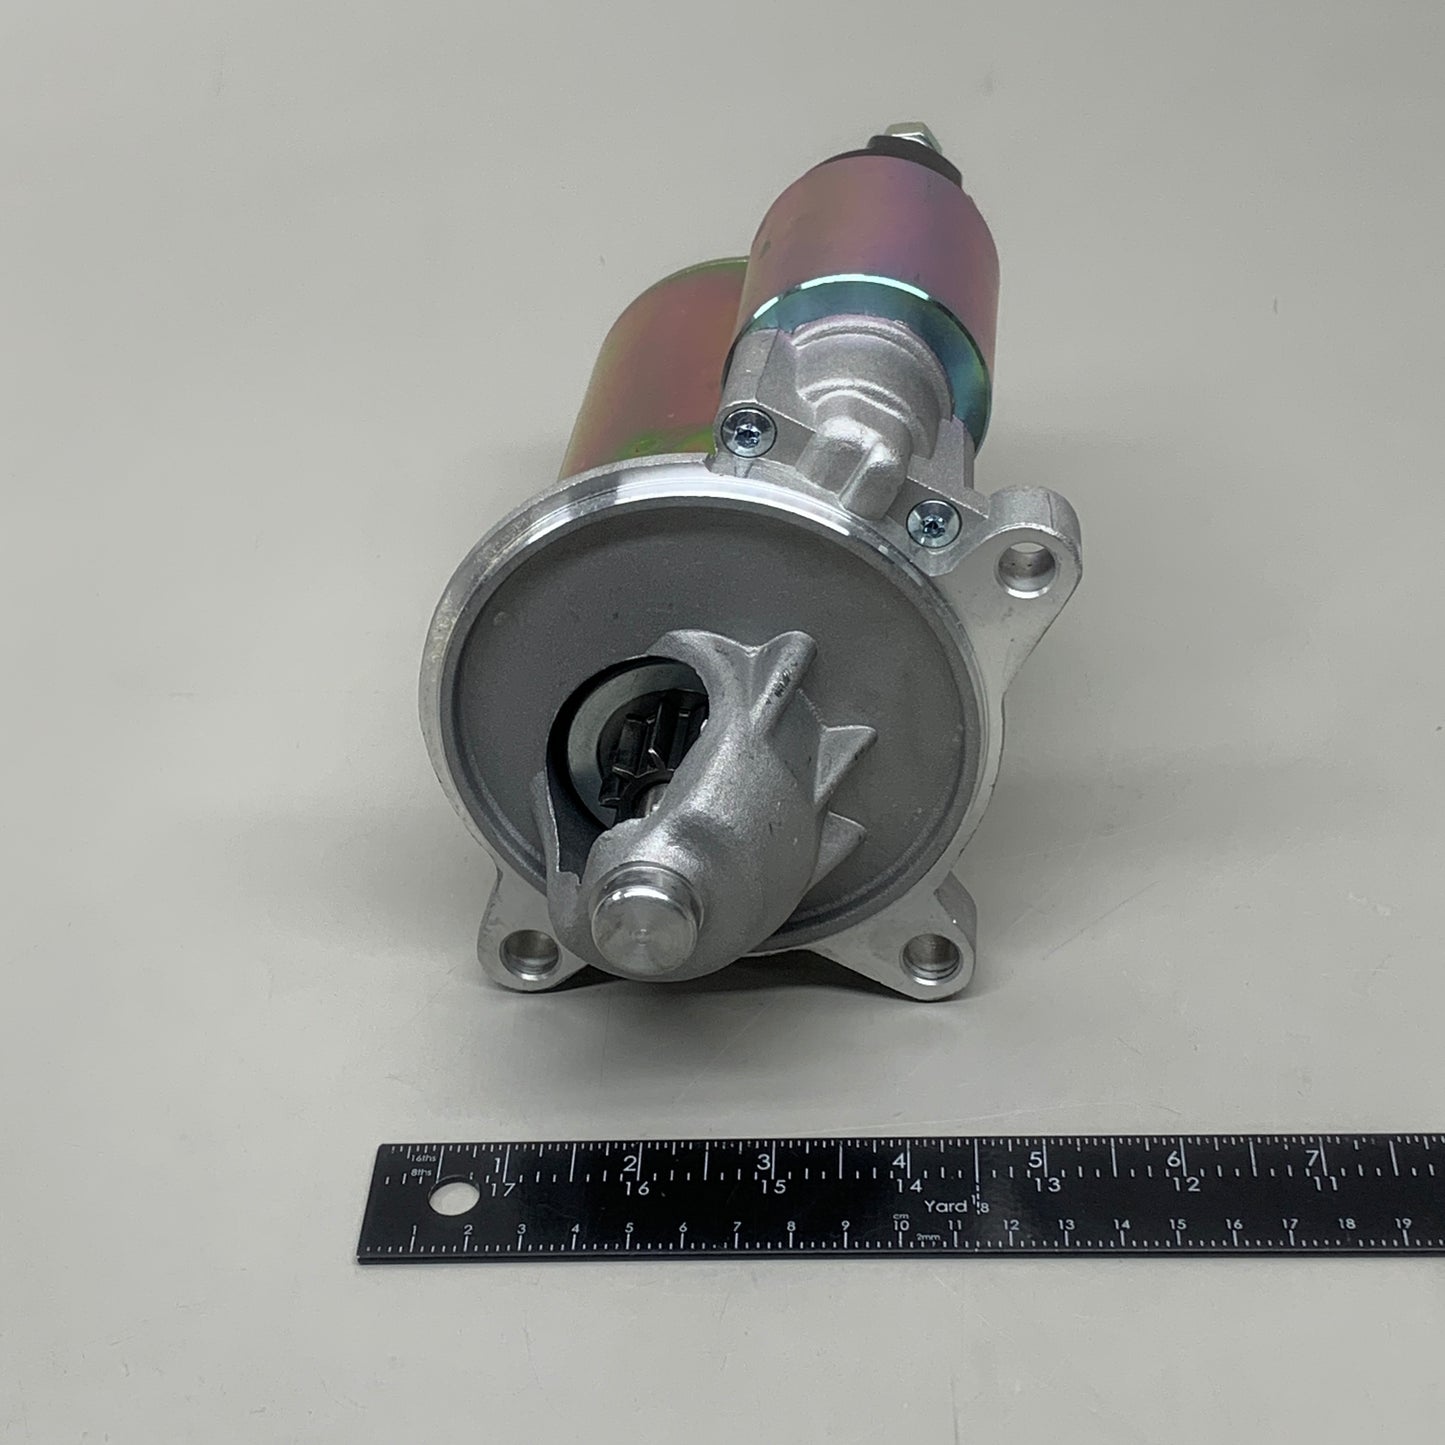 DENSO Starter Motor 12V 1.4kW 14719 280-5108 (Remanufactured)